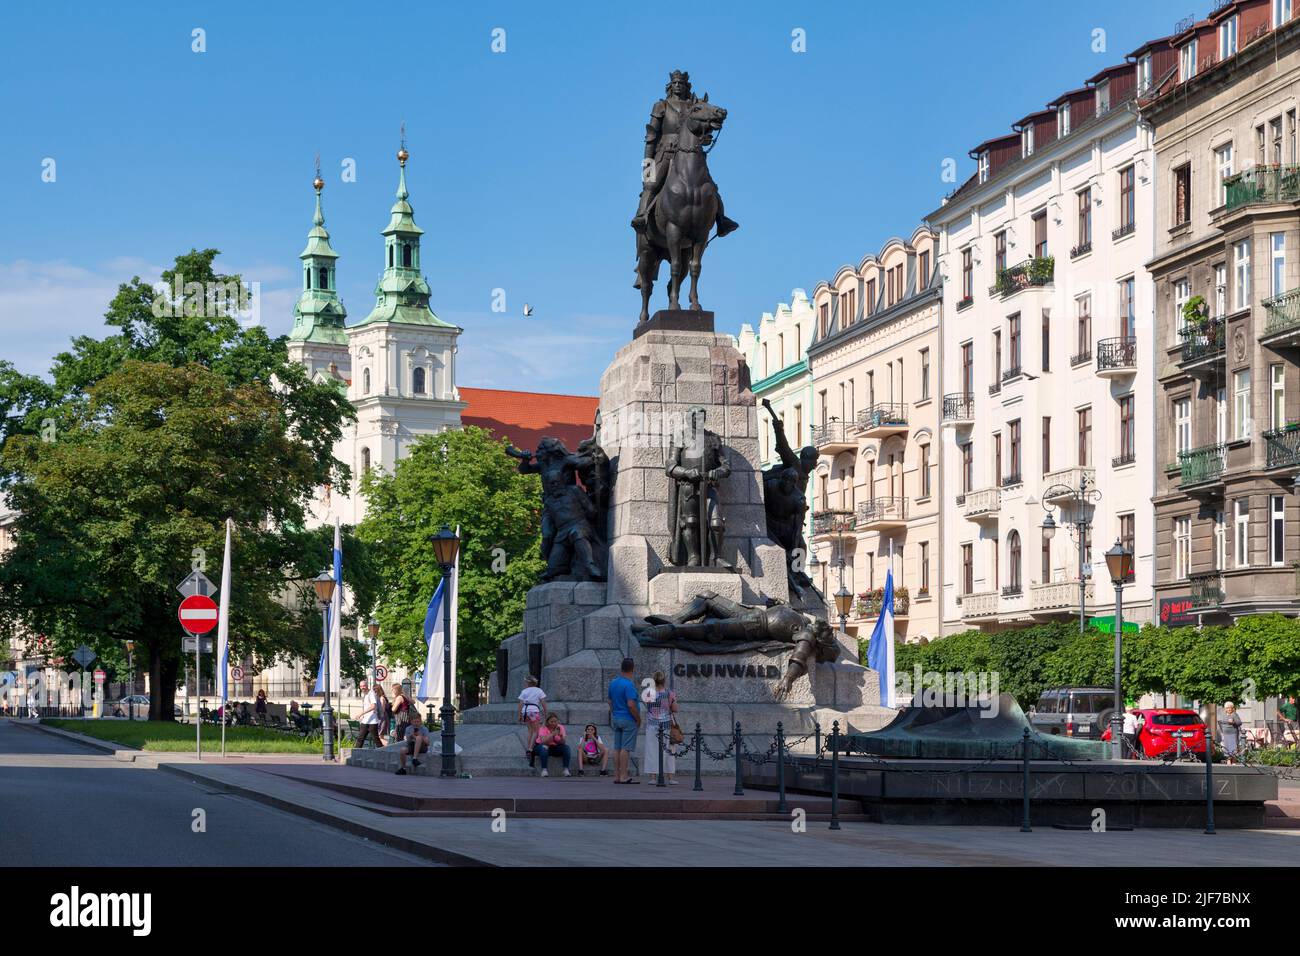 Krakow, Poland - June 06 2019: The Grunwald Monument (Polish: Pomnik Grunwaldzki) is an equestrian statue of King of Poland Władysław II Jagiełło loca Stock Photo